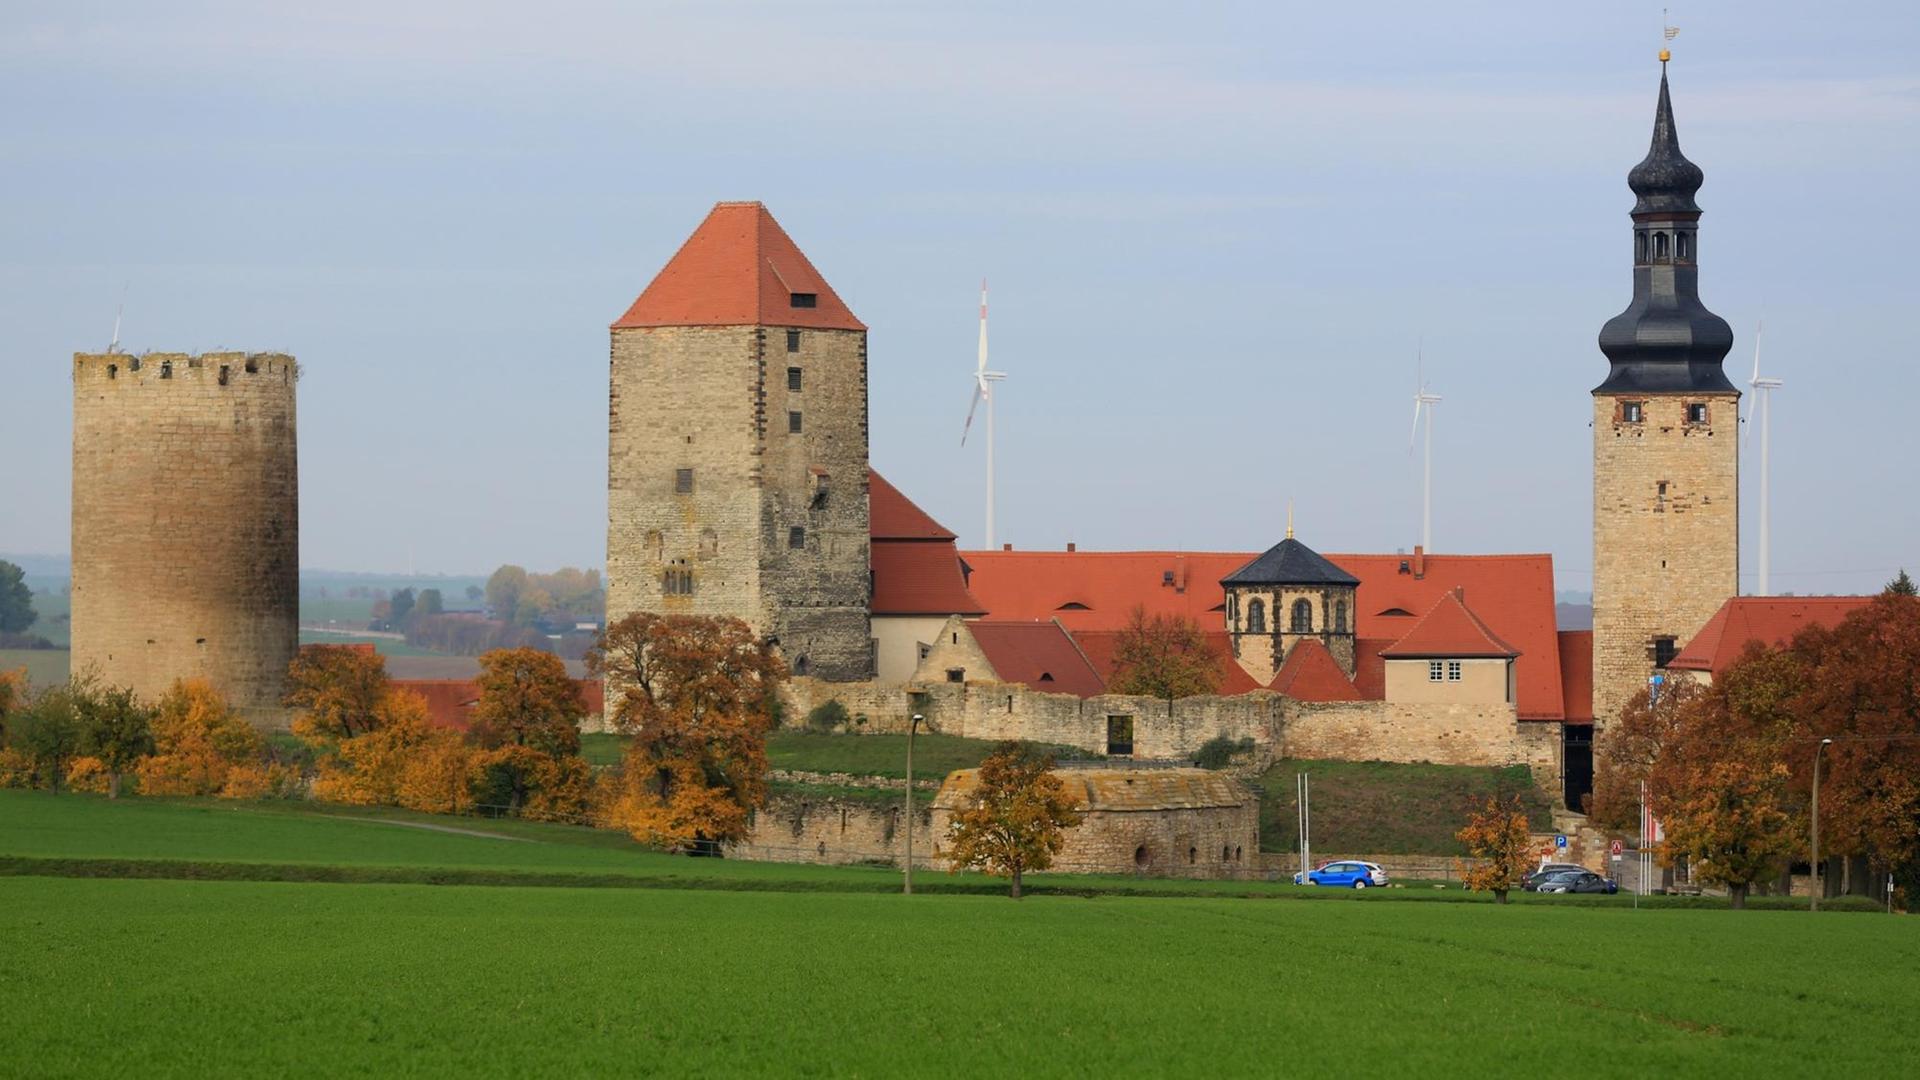 Blick auf die Türme der Burg über der Stadt Querfurt westlich von Halle/Saale in Sachsen-Anhalt.